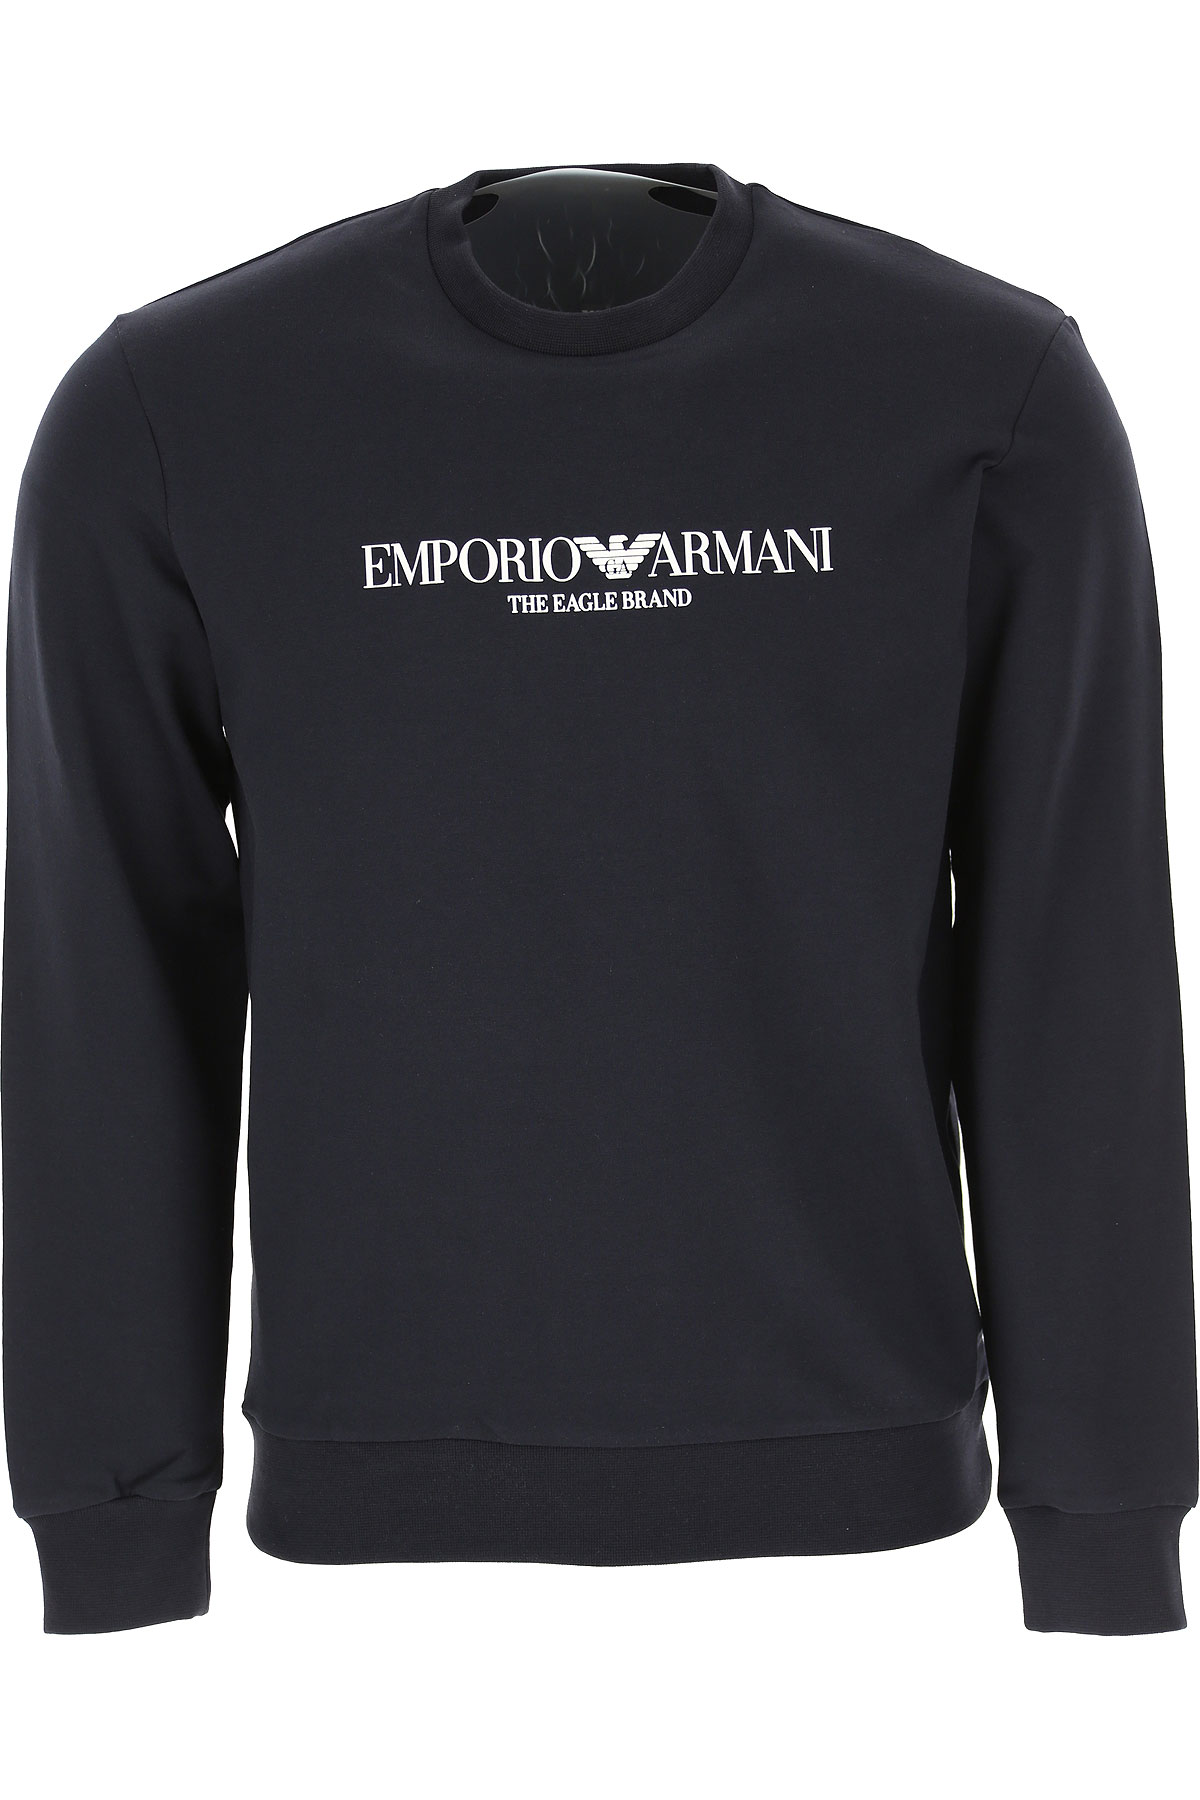 Emporio Armani Sweatshirt für Herren, Kapuzenpulli, Hoodie, Sweats Günstig im Sale, Marineblau, Baumwolle, 2017, M S XL XXL